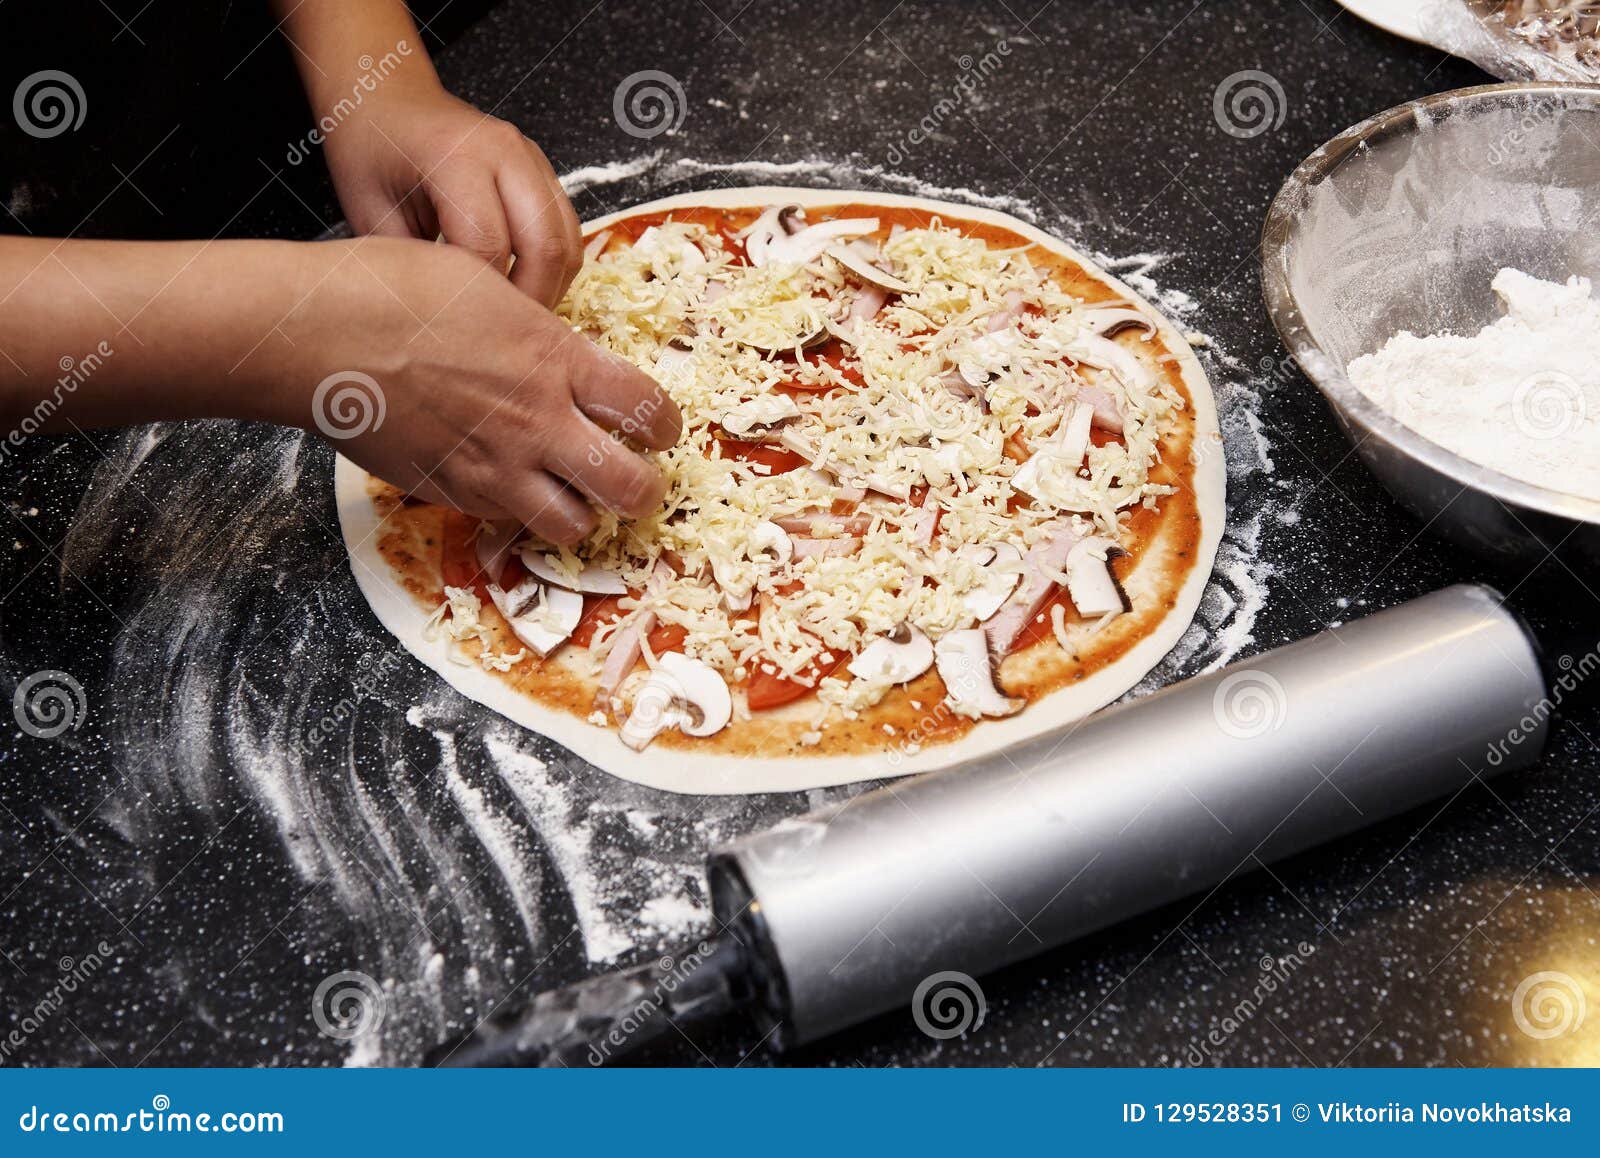 что нужно для тесто под пиццу фото 74